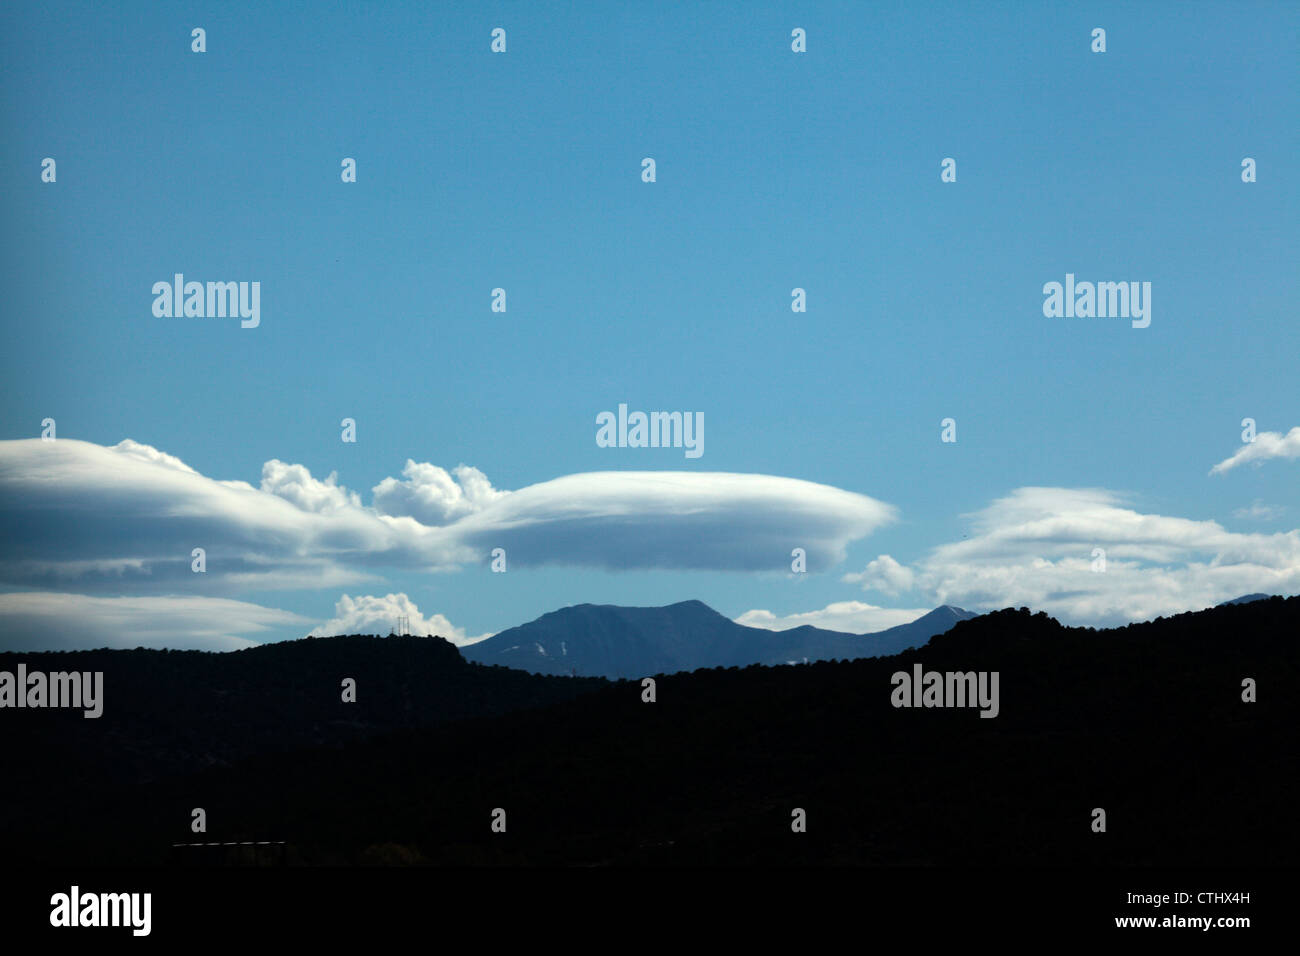 Linsenförmige Wolkenbildung ähnlich wie ein Raumschiff oder UFO. Stockfoto